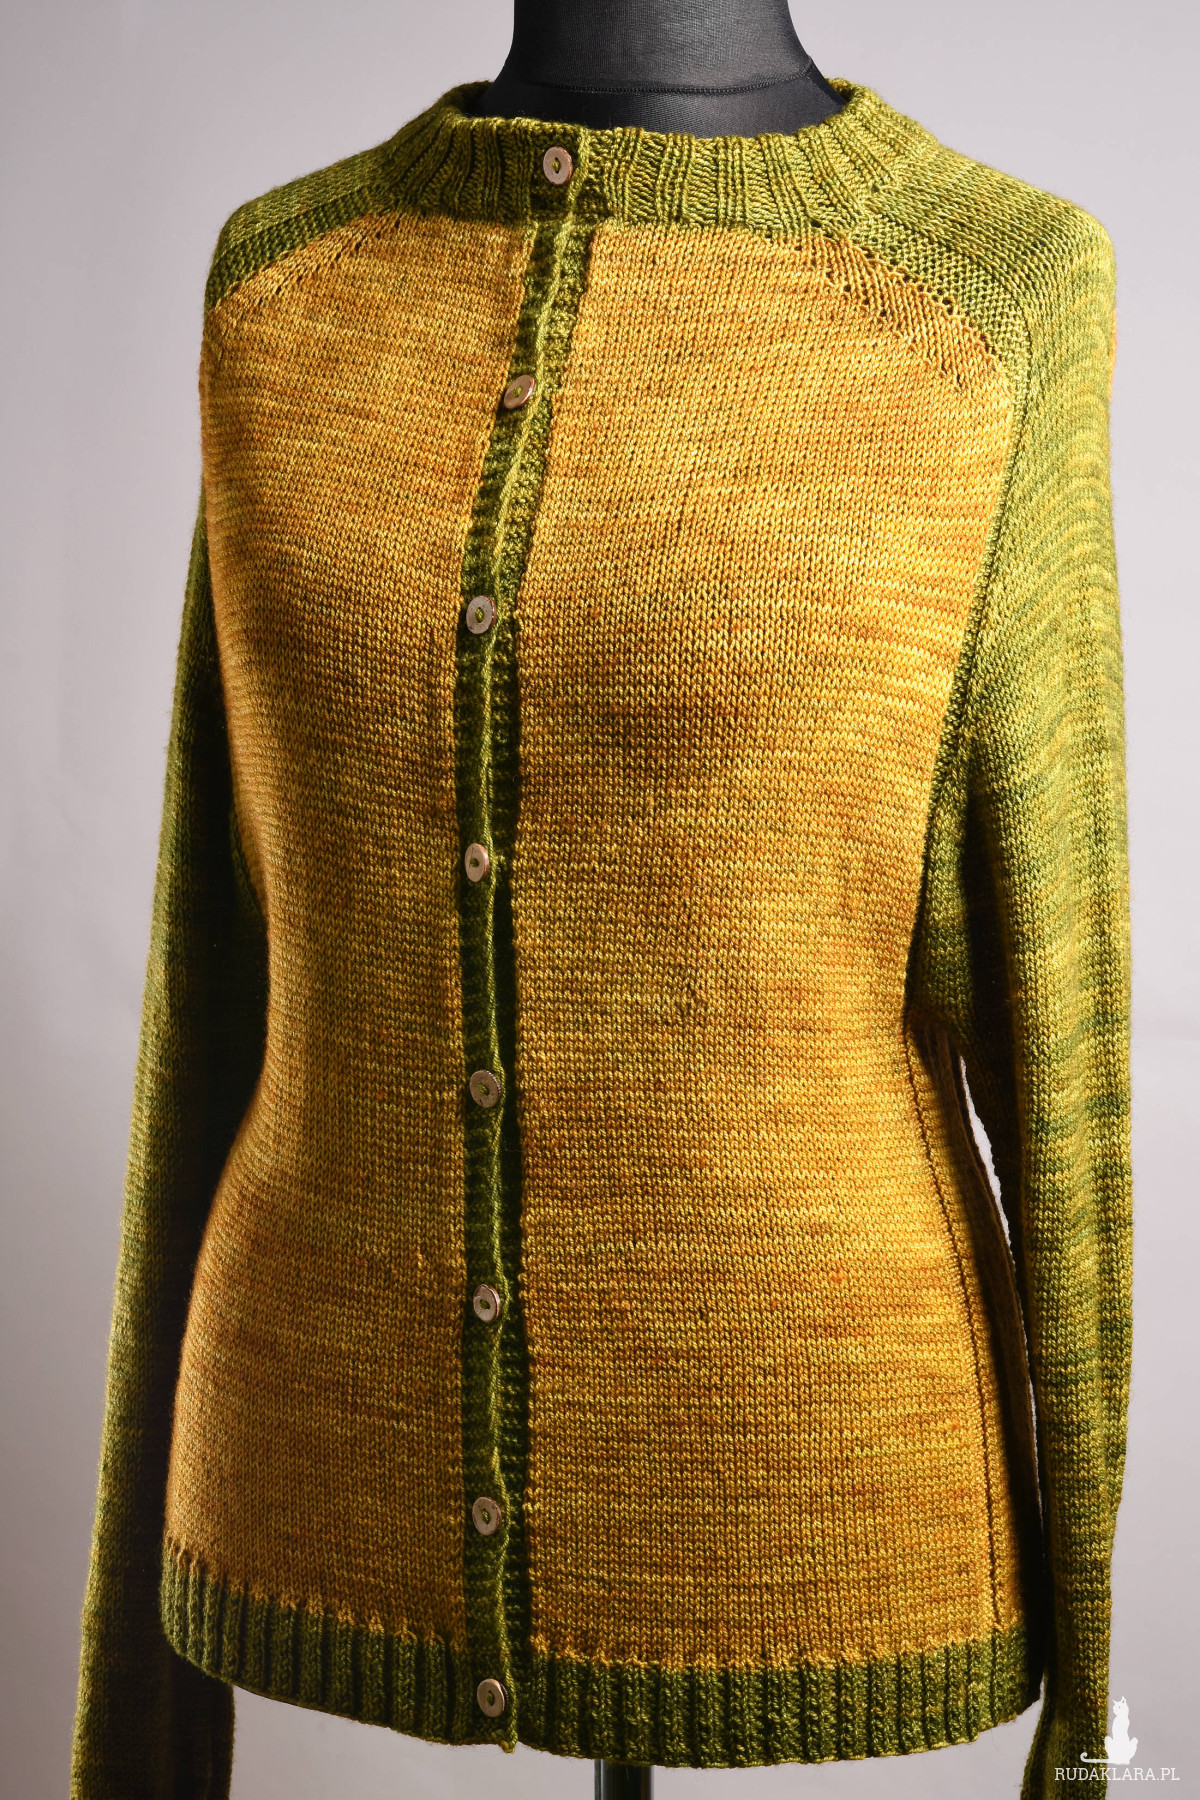 Damski kardigan Dijon#zrobiony ręcznie#zrobiony na drutach#rozpinany sweter dla niej#wrabiane ramiona#podwójnie wykończony dekolt#